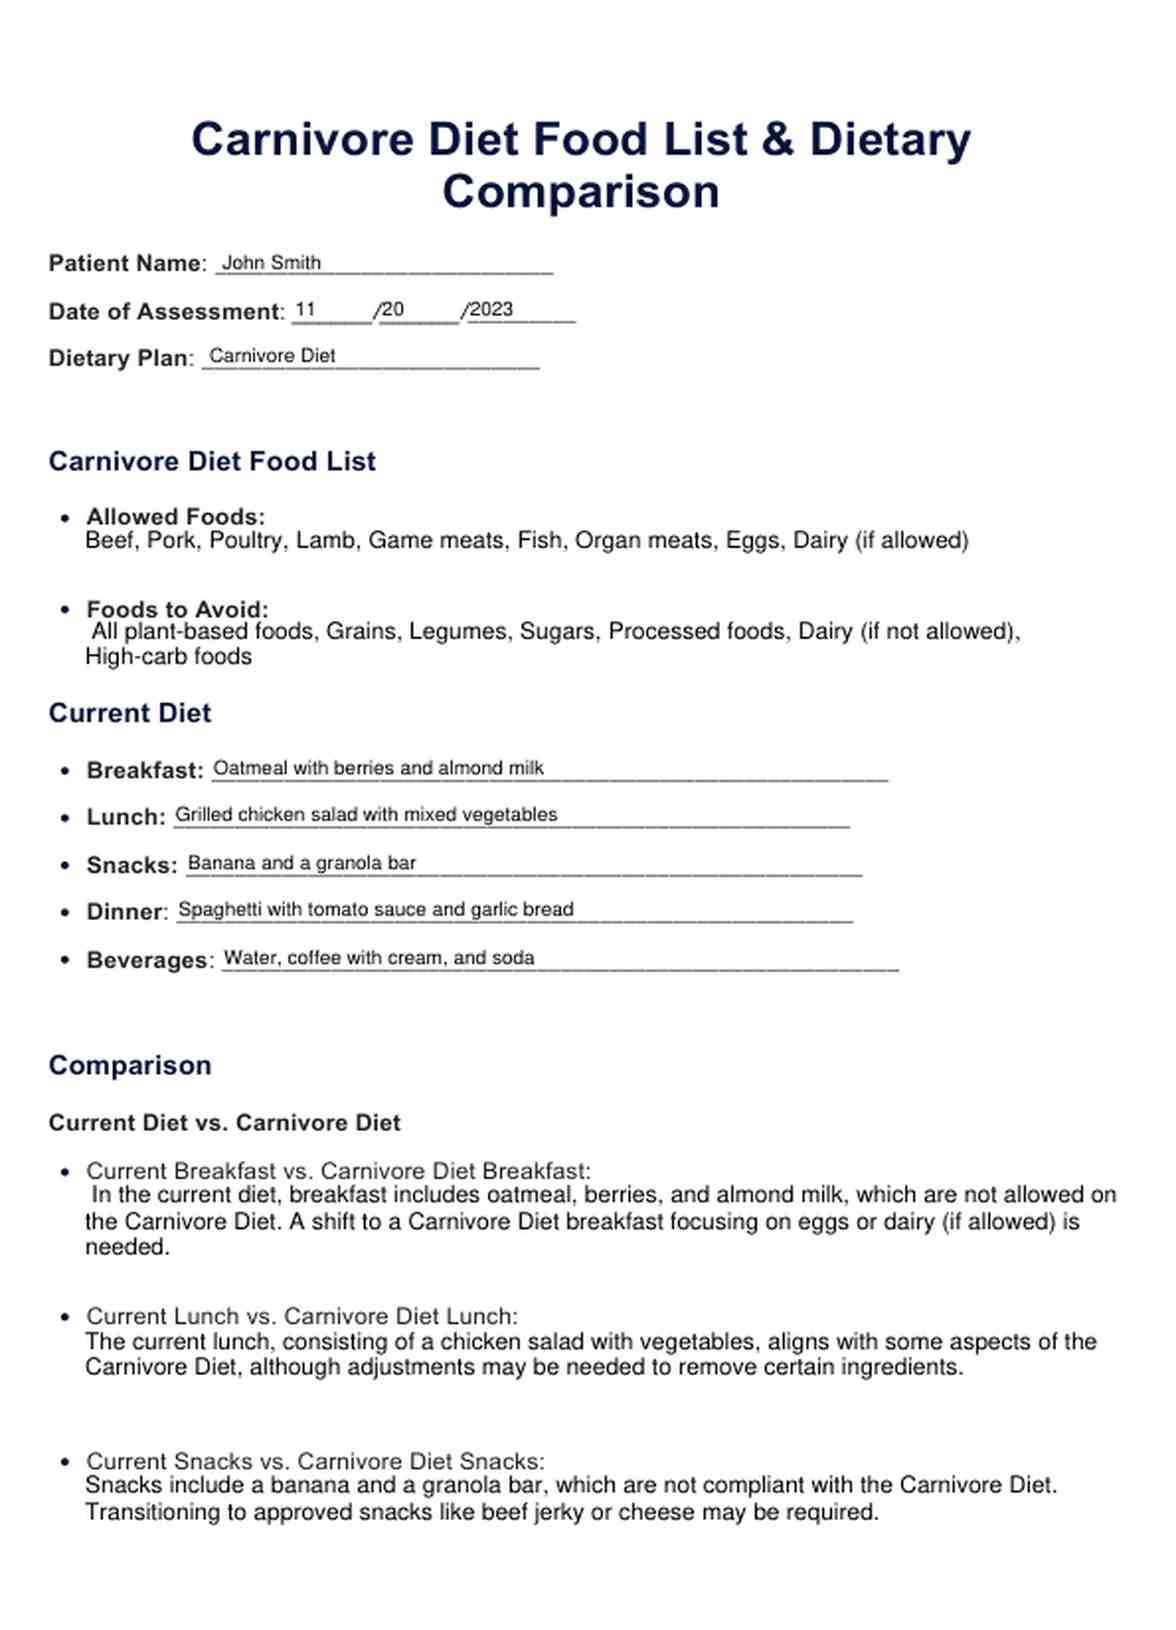 Carnivore Diet Food List PDF Example